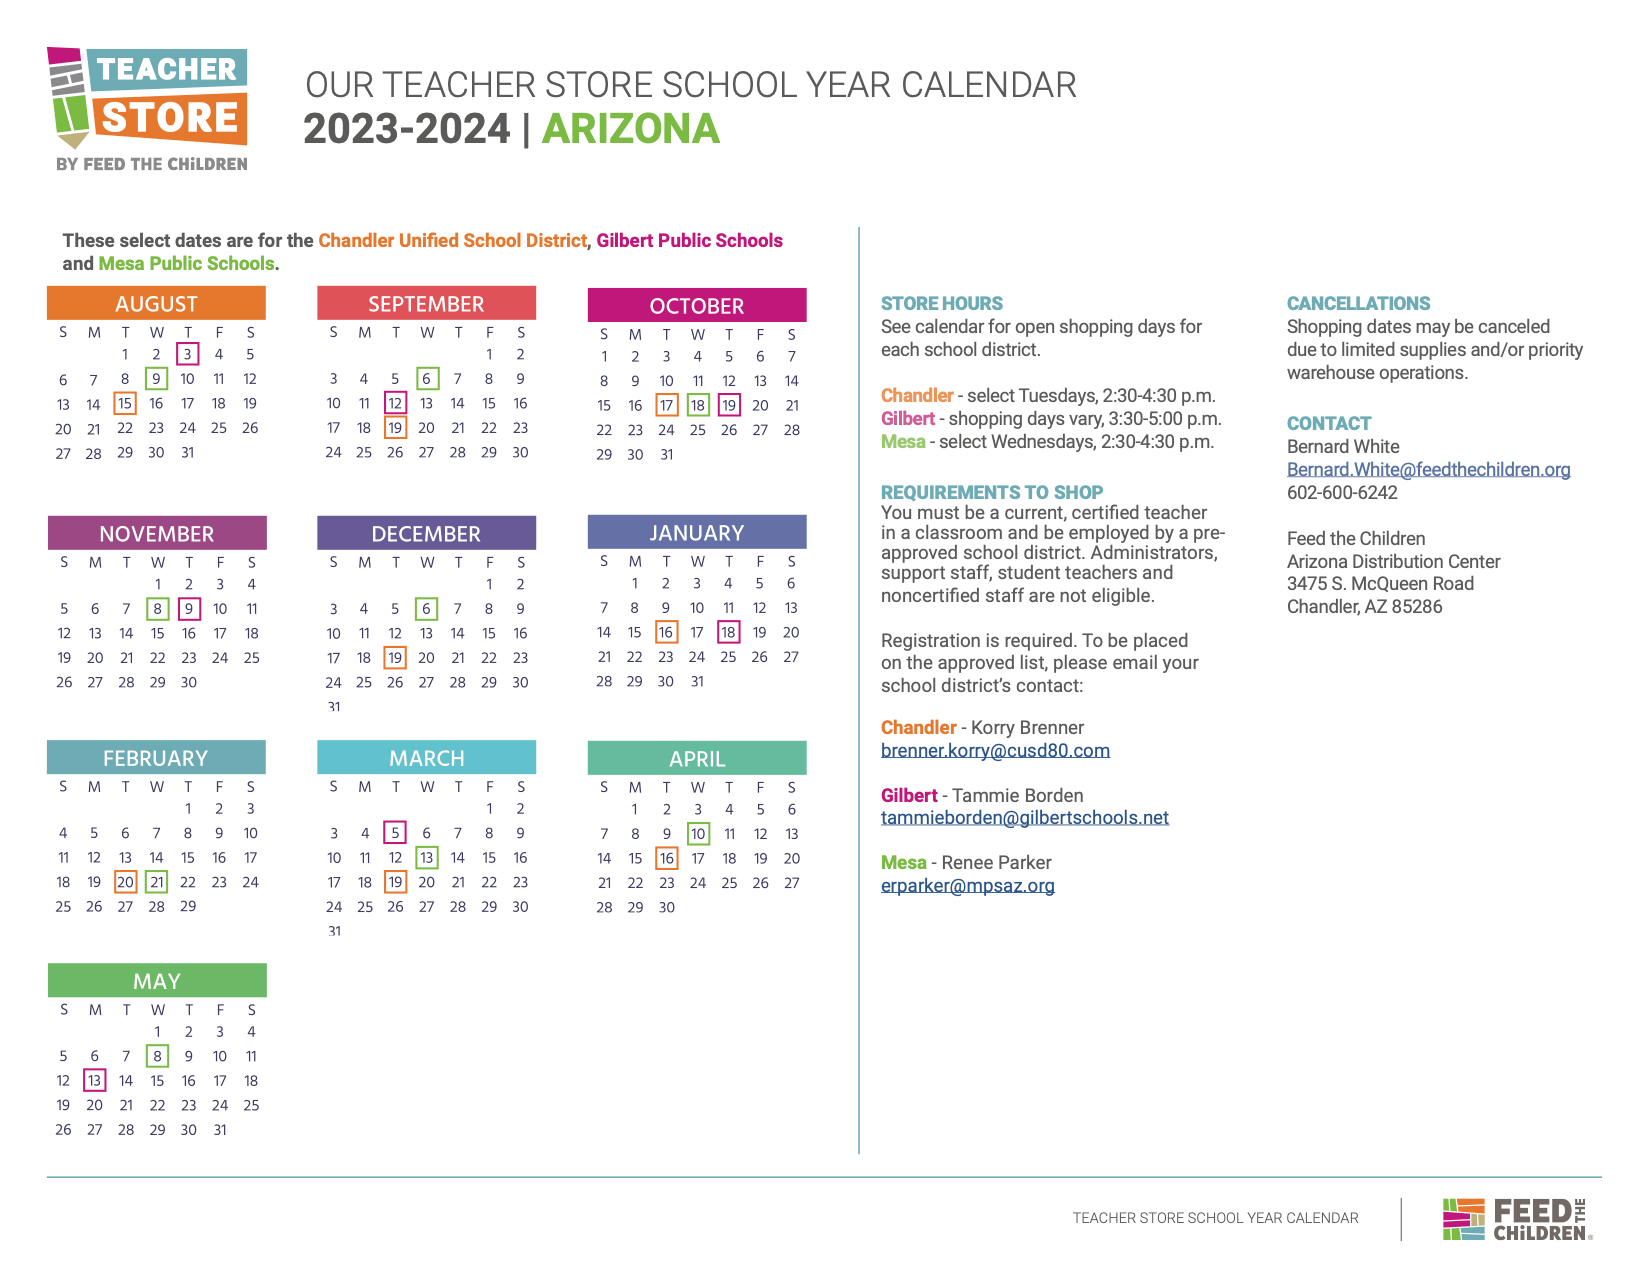 A calendar of the 2023-2024 Arizona Teacher Store Schedule